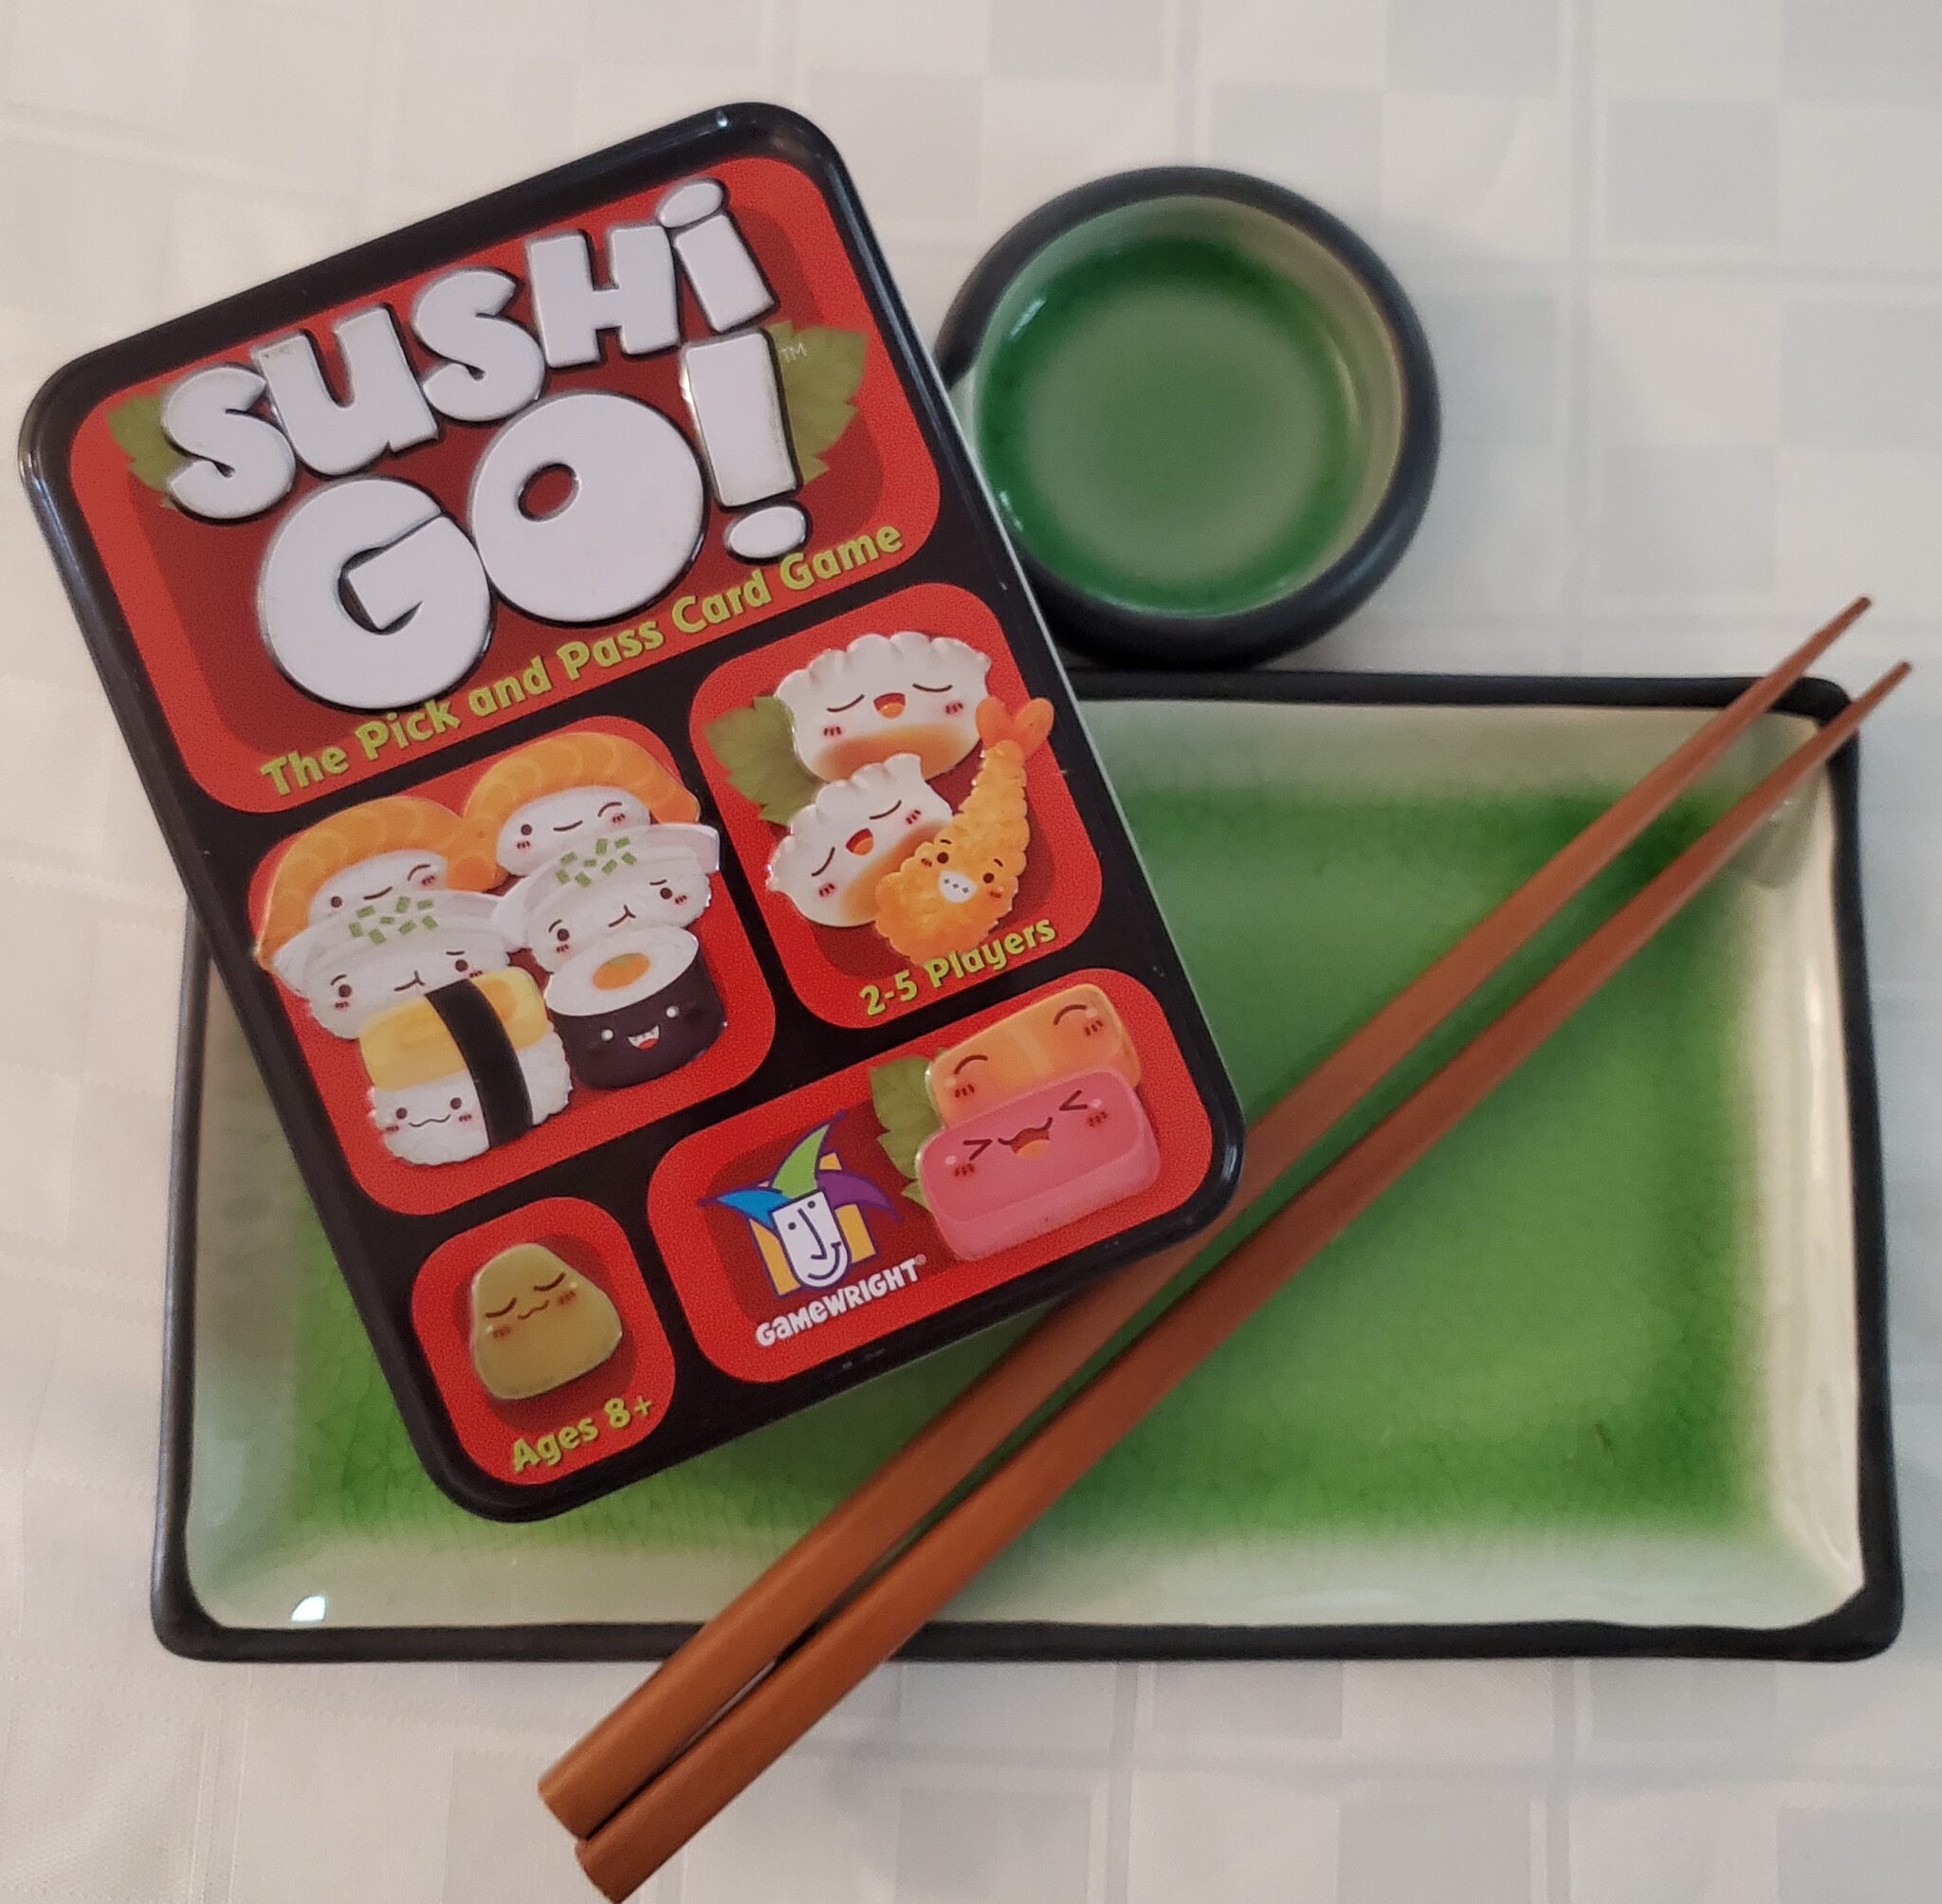 Sushi Go with Sushi Dish